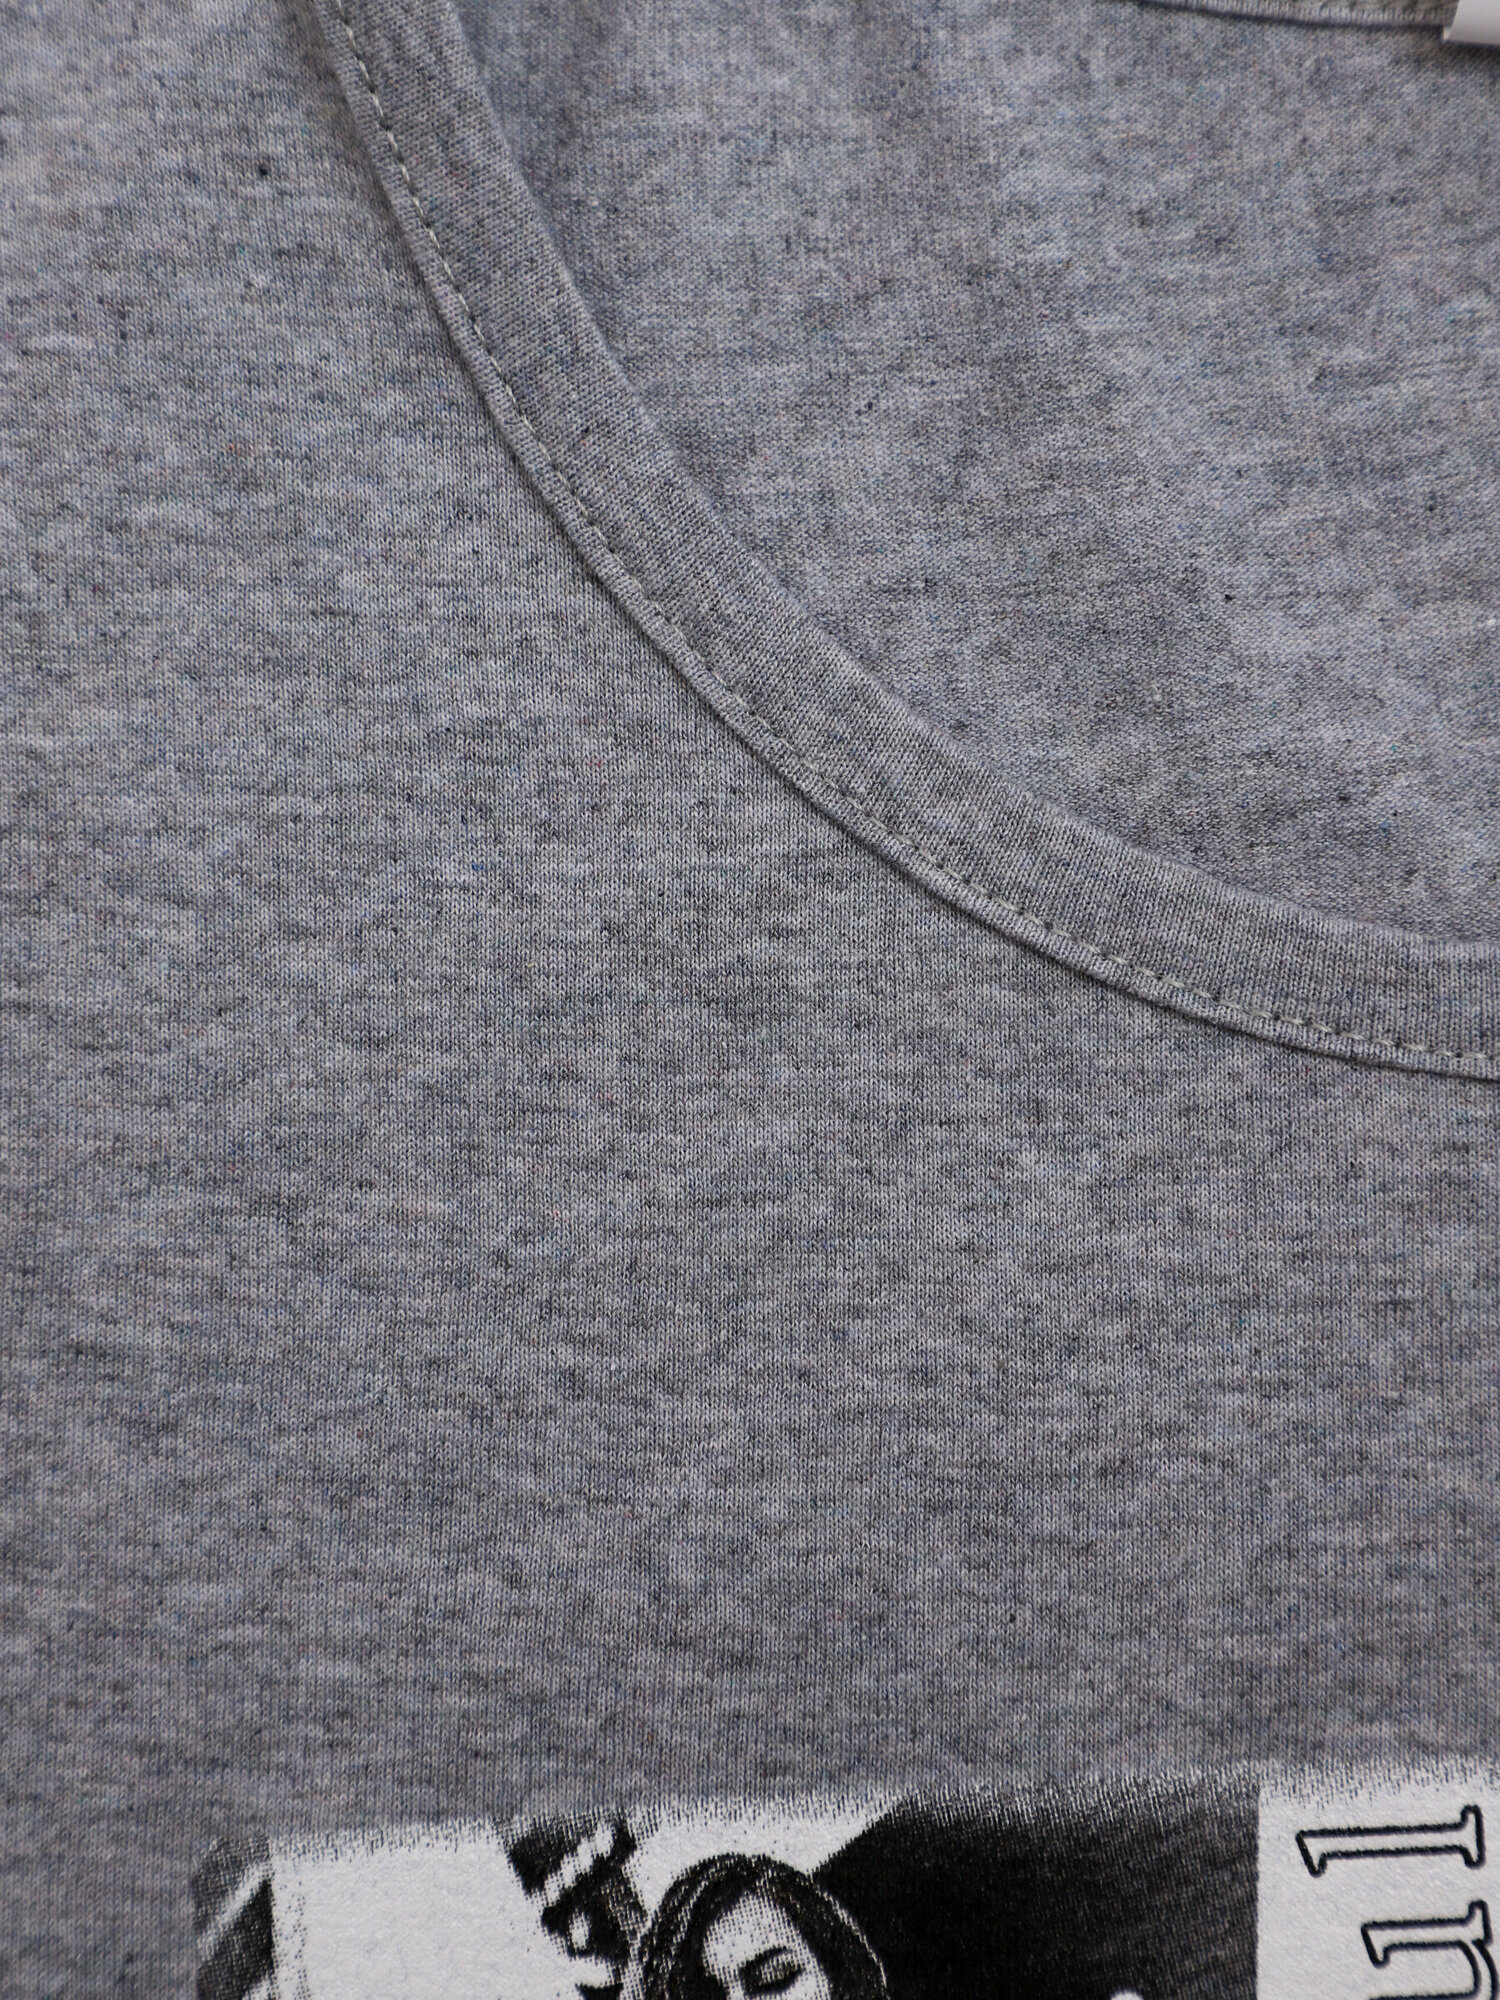 Женская ночная сорочка больших размеров Манифик серый IvCapriz 46 - фотография № 8